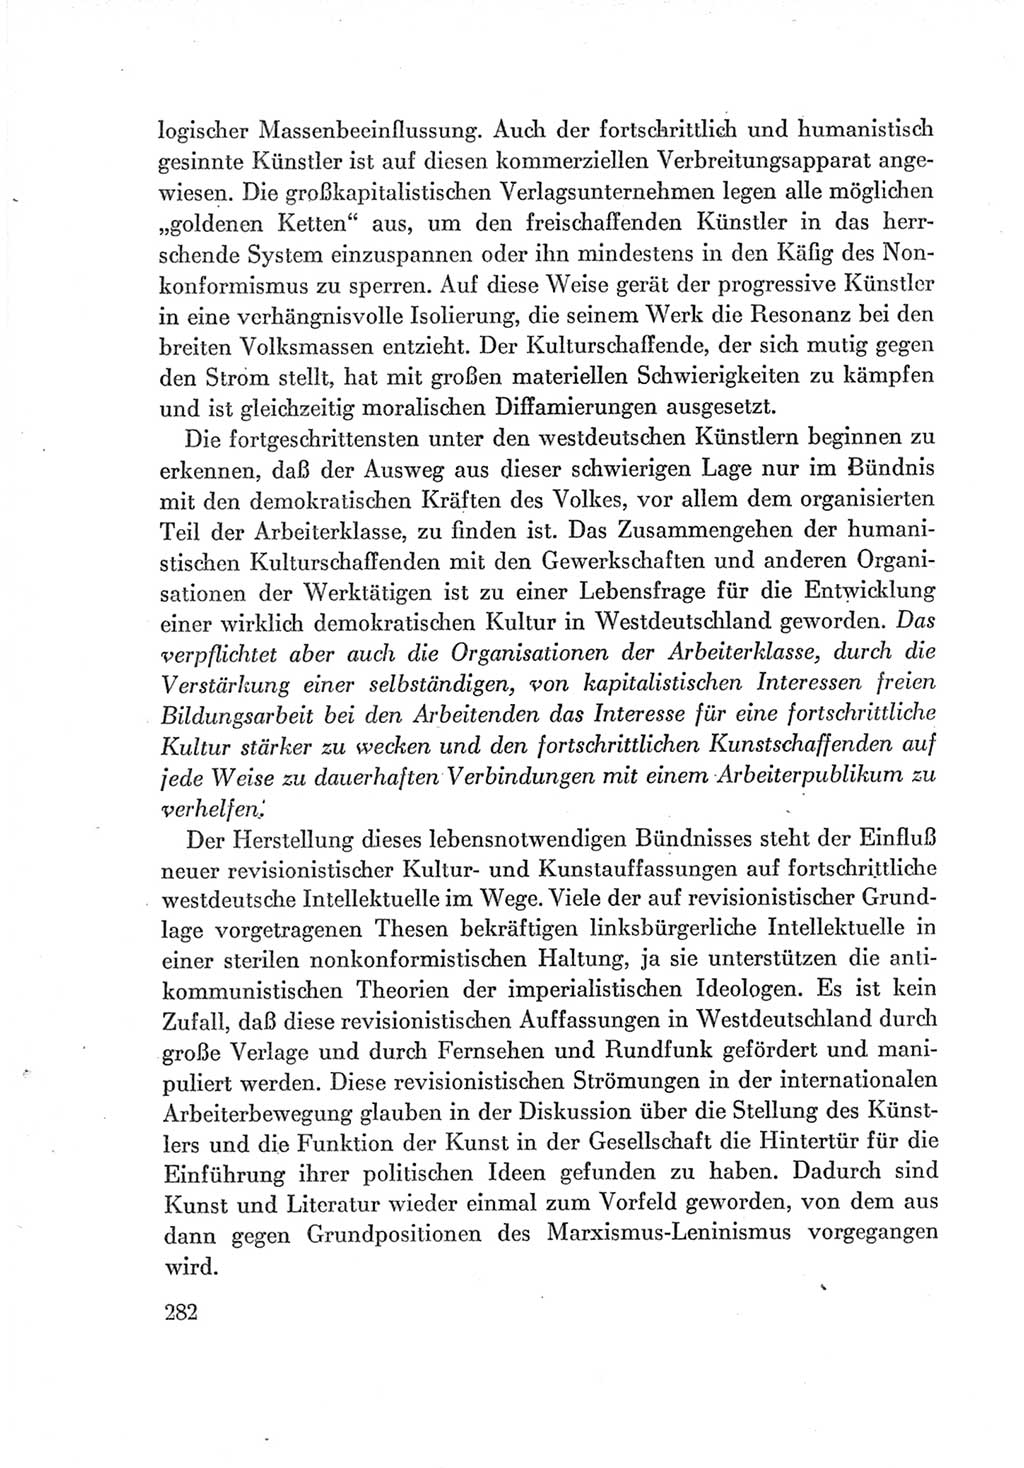 Protokoll der Verhandlungen des Ⅶ. Parteitages der Sozialistischen Einheitspartei Deutschlands (SED) [Deutsche Demokratische Republik (DDR)] 1967, Band Ⅰ, Seite 282 (Prot. Verh. Ⅶ. PT SED DDR 1967, Bd. Ⅰ, S. 282)